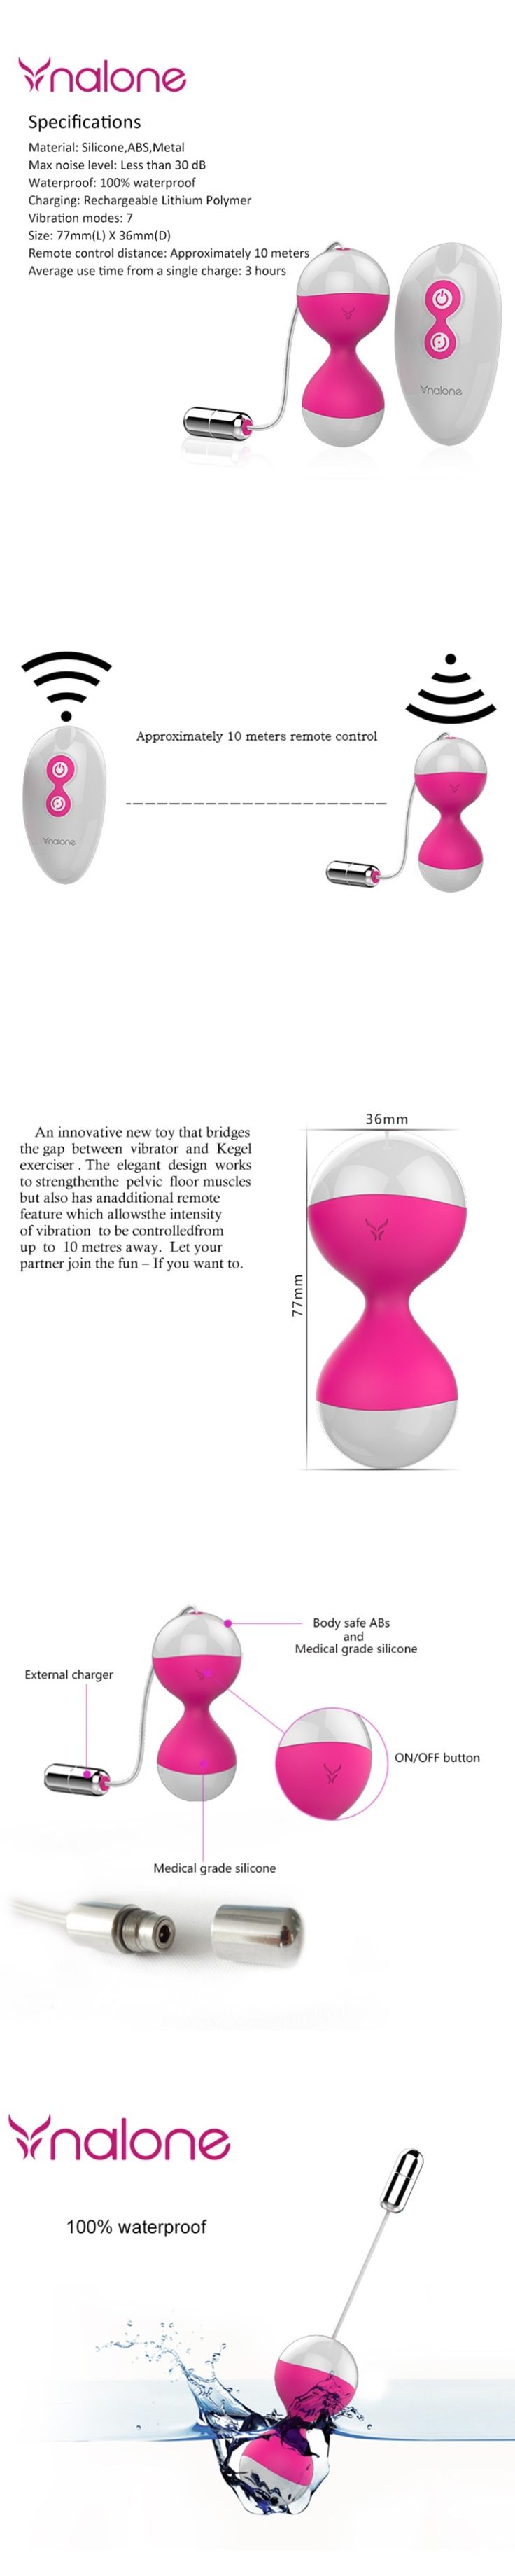 Nalone Kinds Vibration Silicone Vaginal Balls Remote Control Vibrator Love Ben Wa Balls Wireless